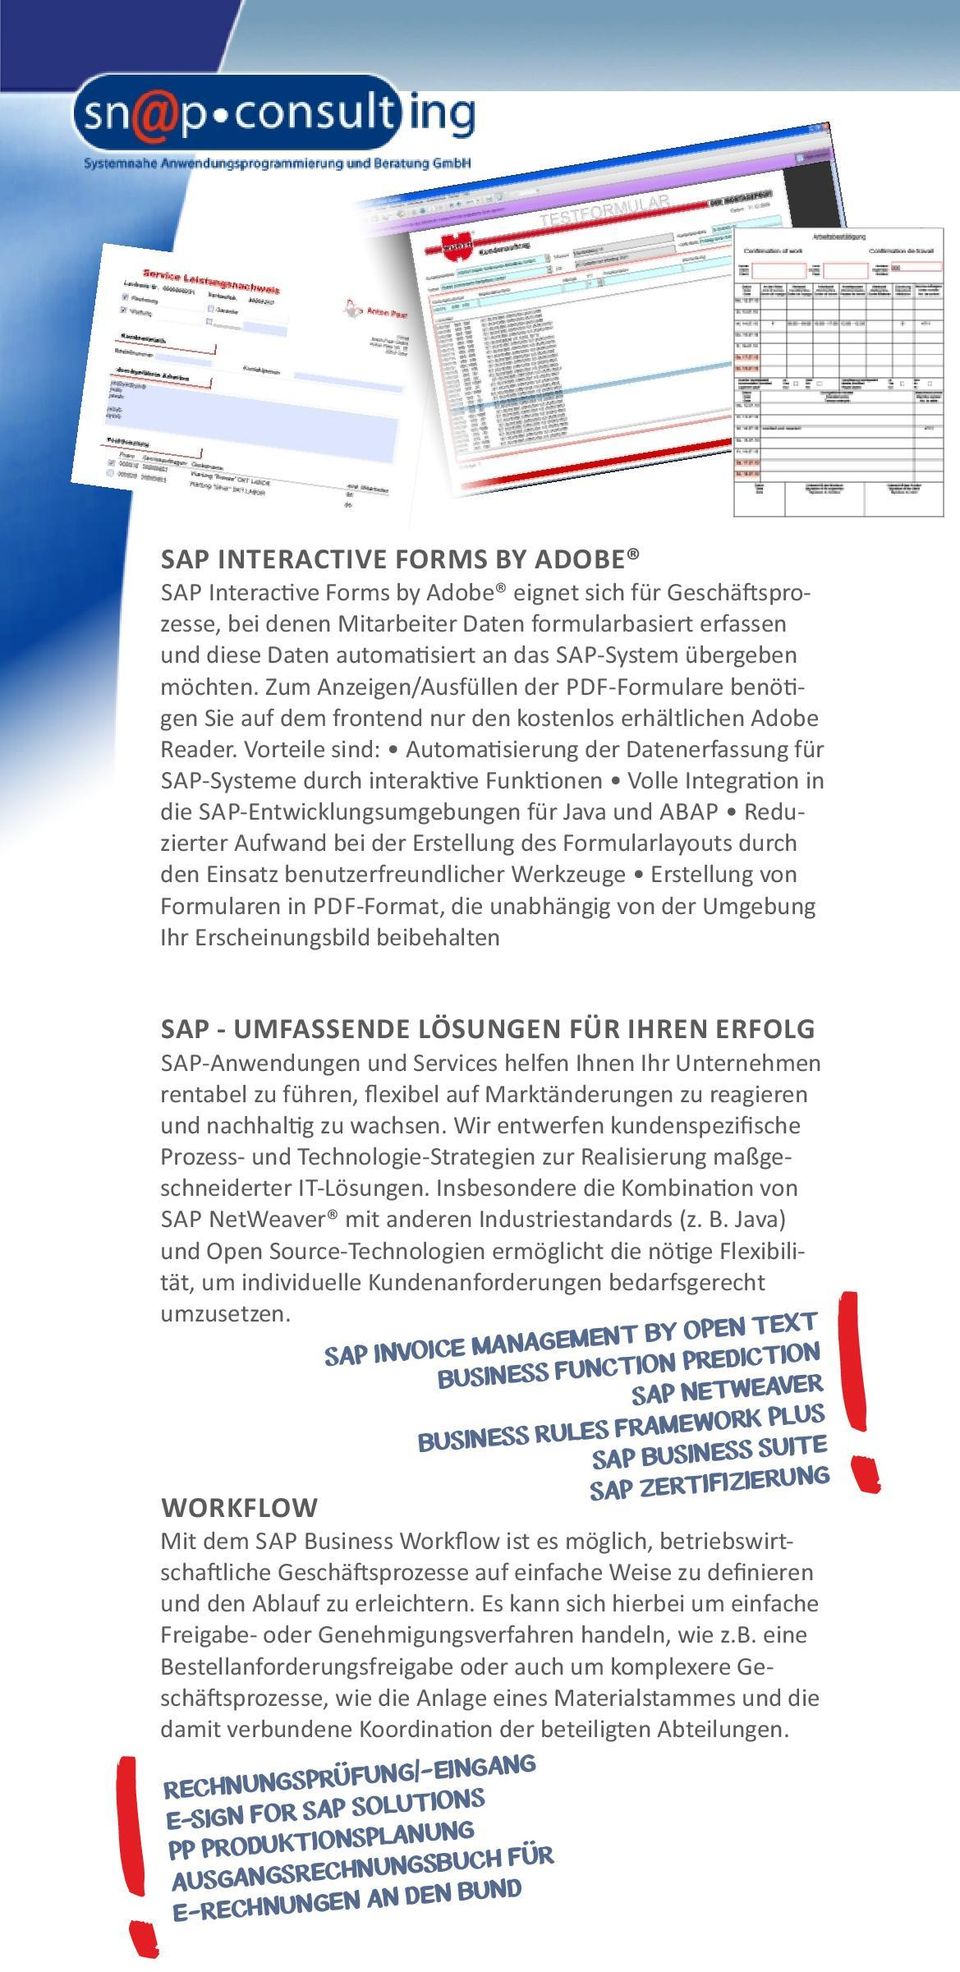 Vorteile sind: Automa sierung der Datenerfassung für SAP-Systeme durch interak ve Funk onen Volle Integra on in die SAP-Entwicklungsumgebungen für Java und ABAP Reduzierter Aufwand bei der Erstellung